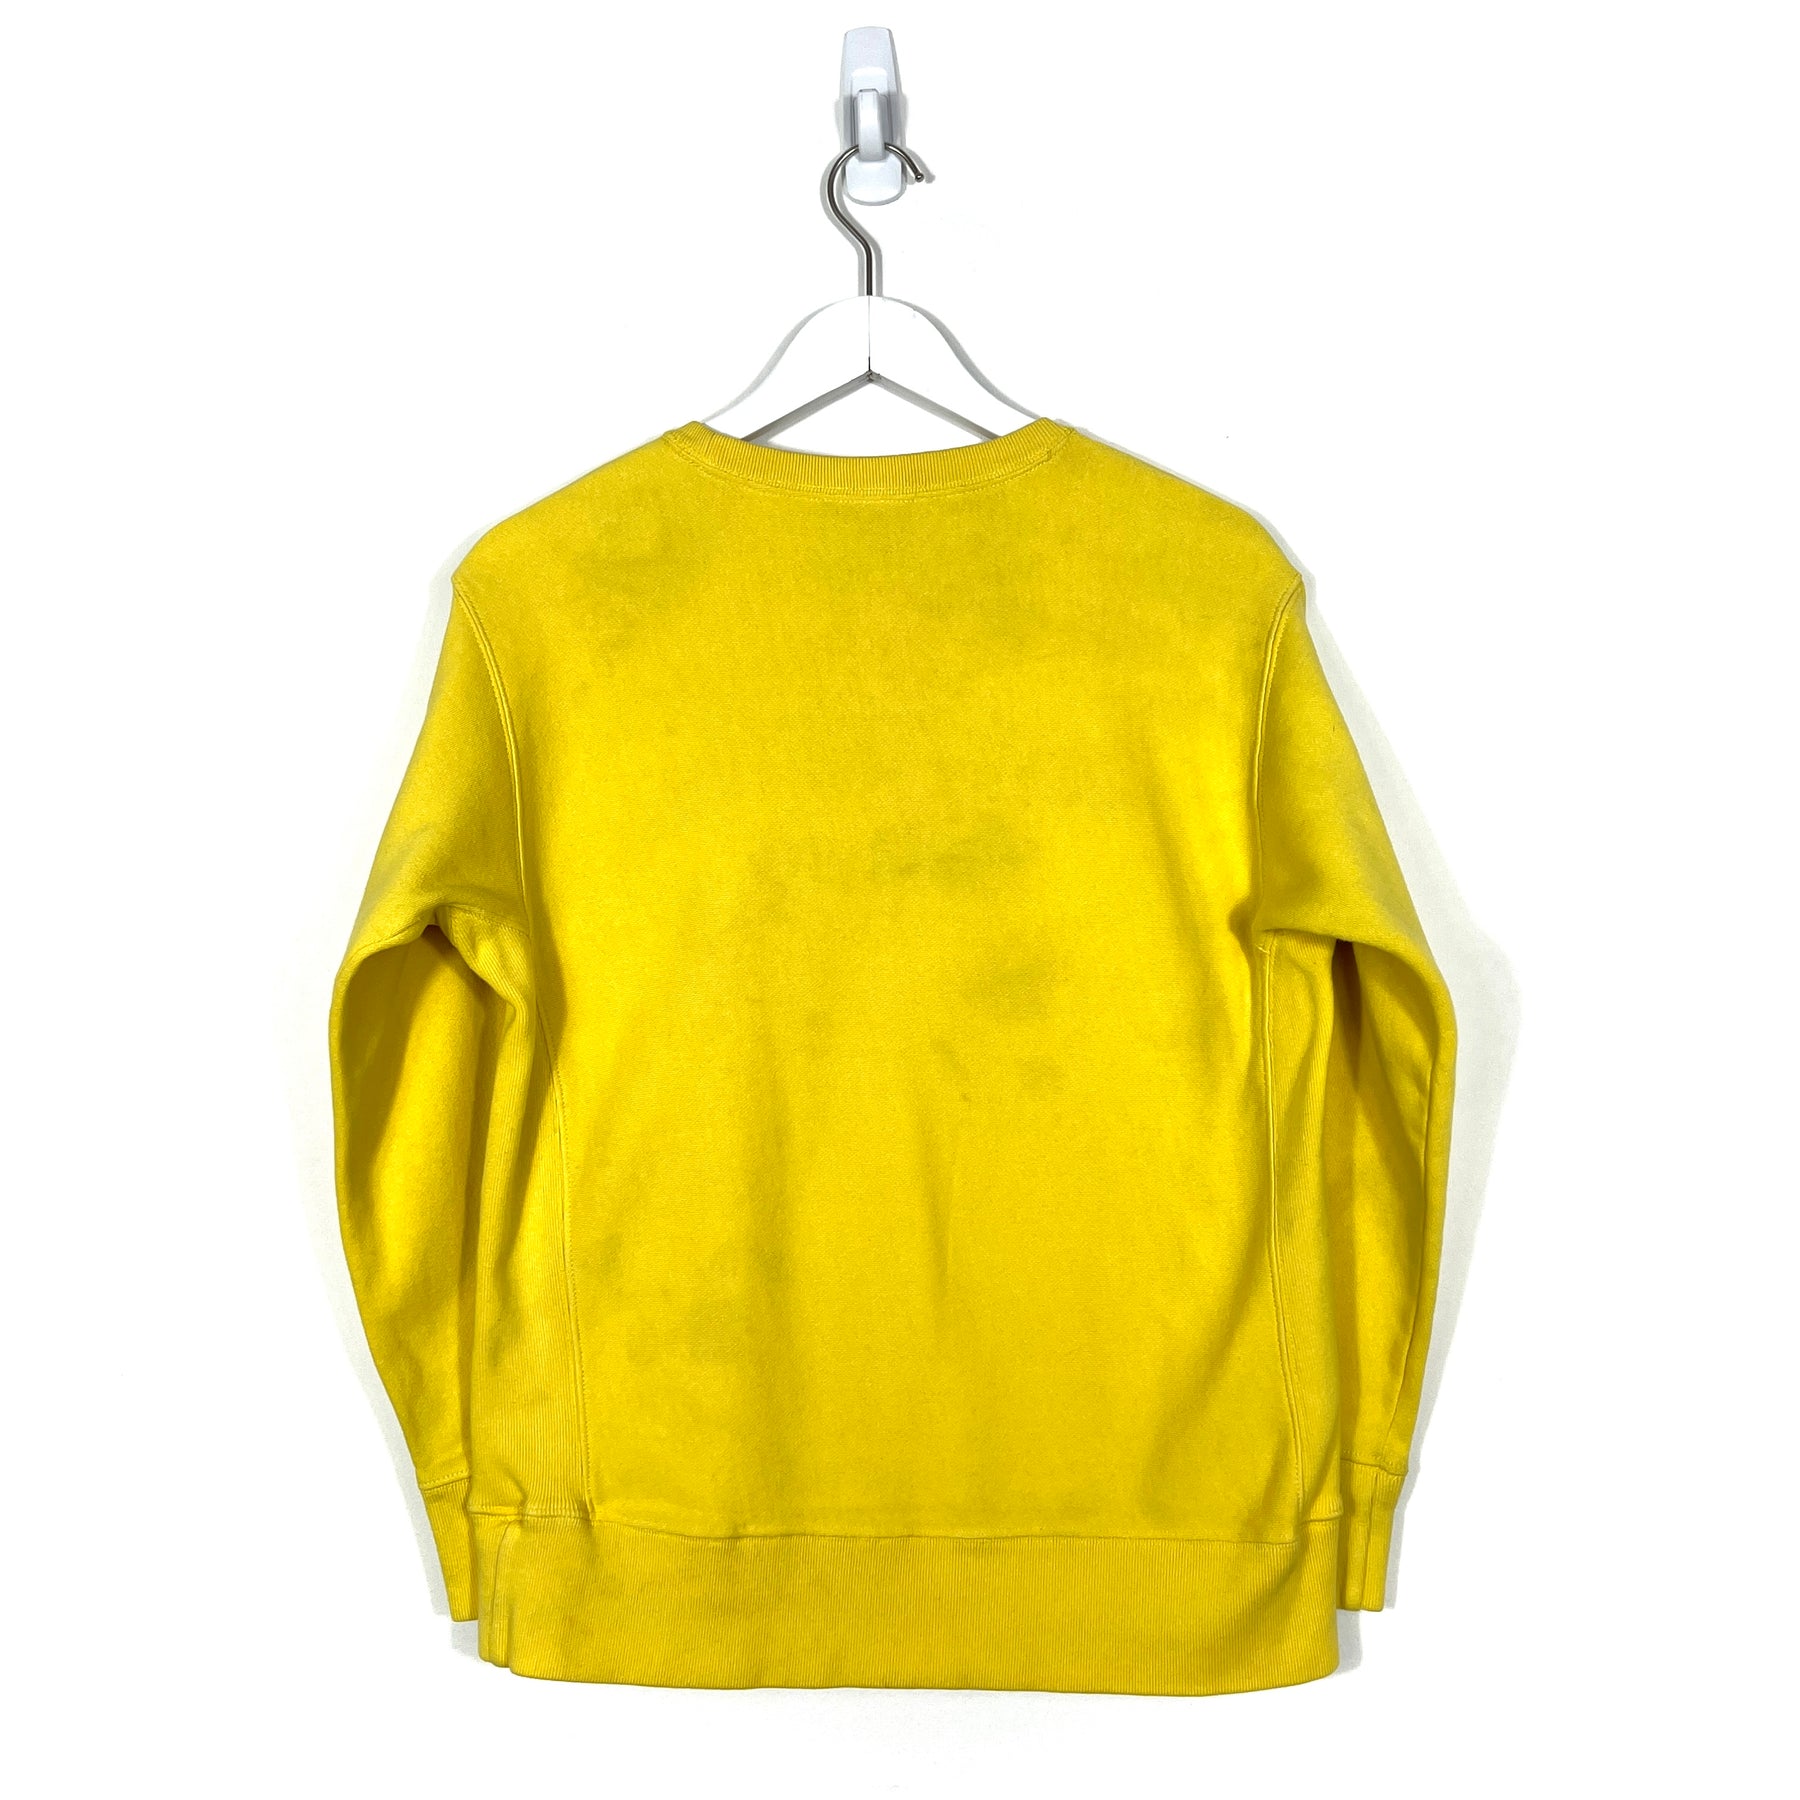 Vintage Polo Ralph Lauren Crewneck Sweatshirt - Women's Medium